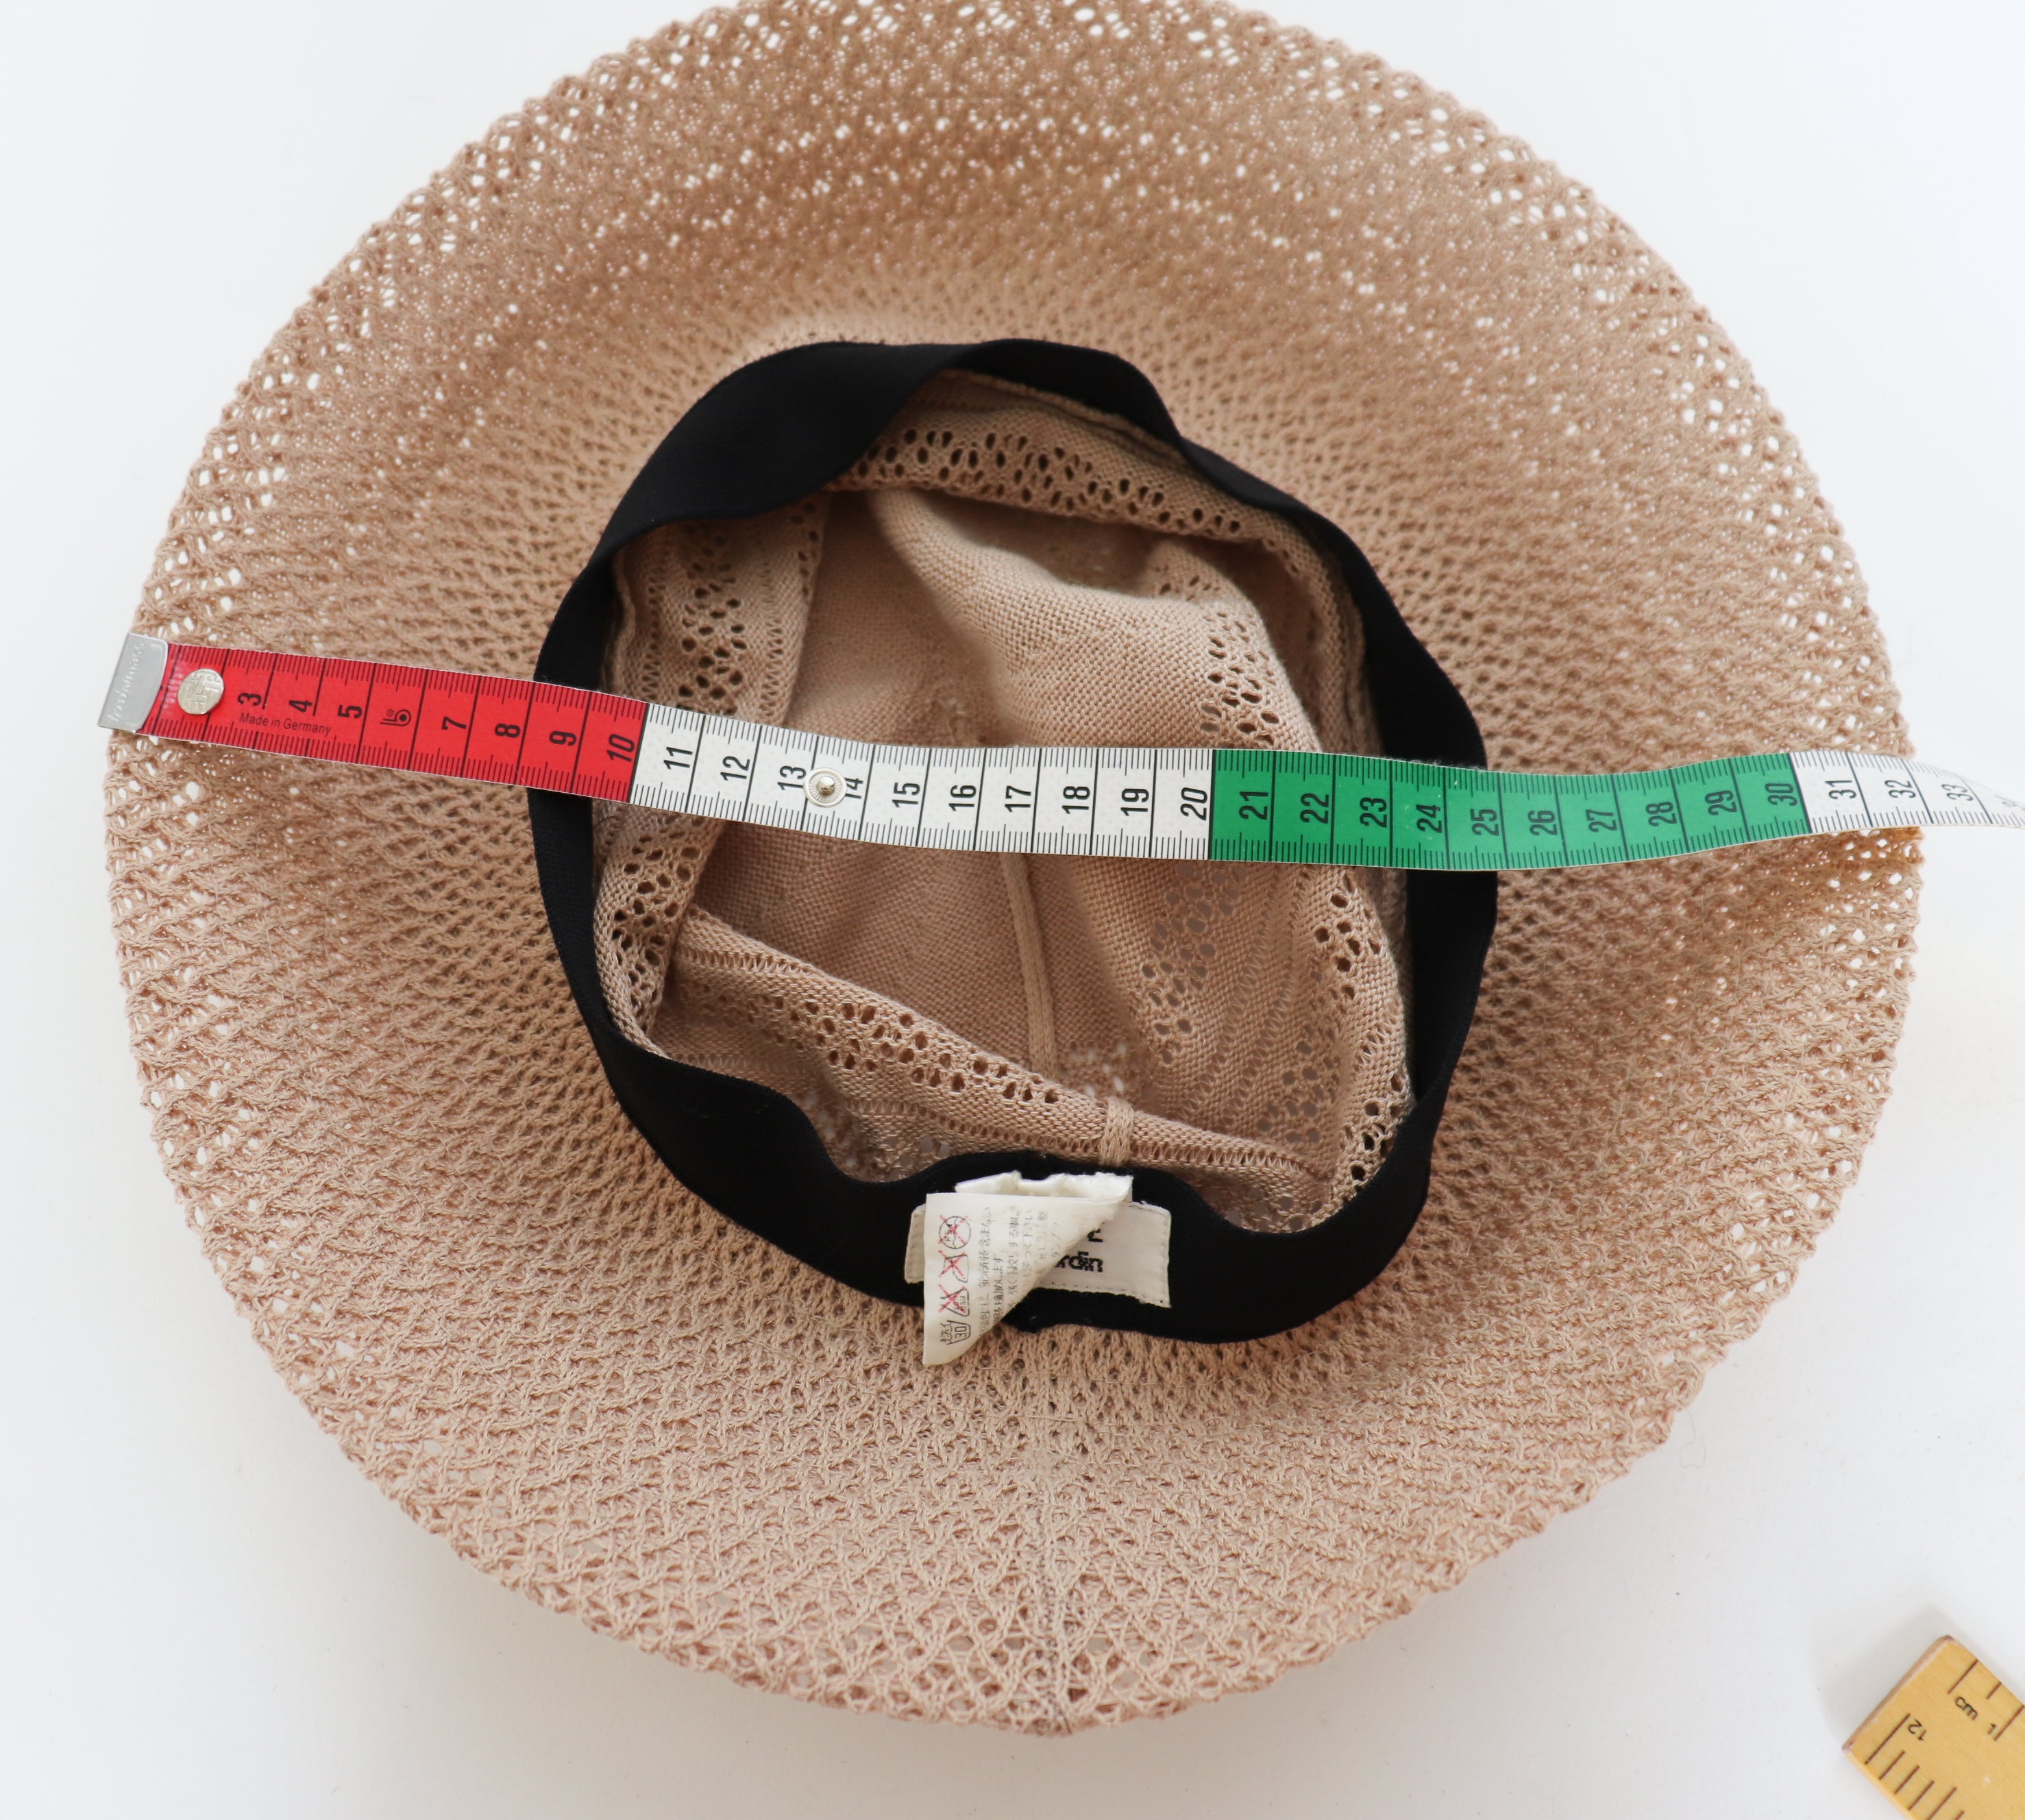 Pierre Cardin Foldable Vintage Sun Hat - Beige - Bucket / Cloche - M / L